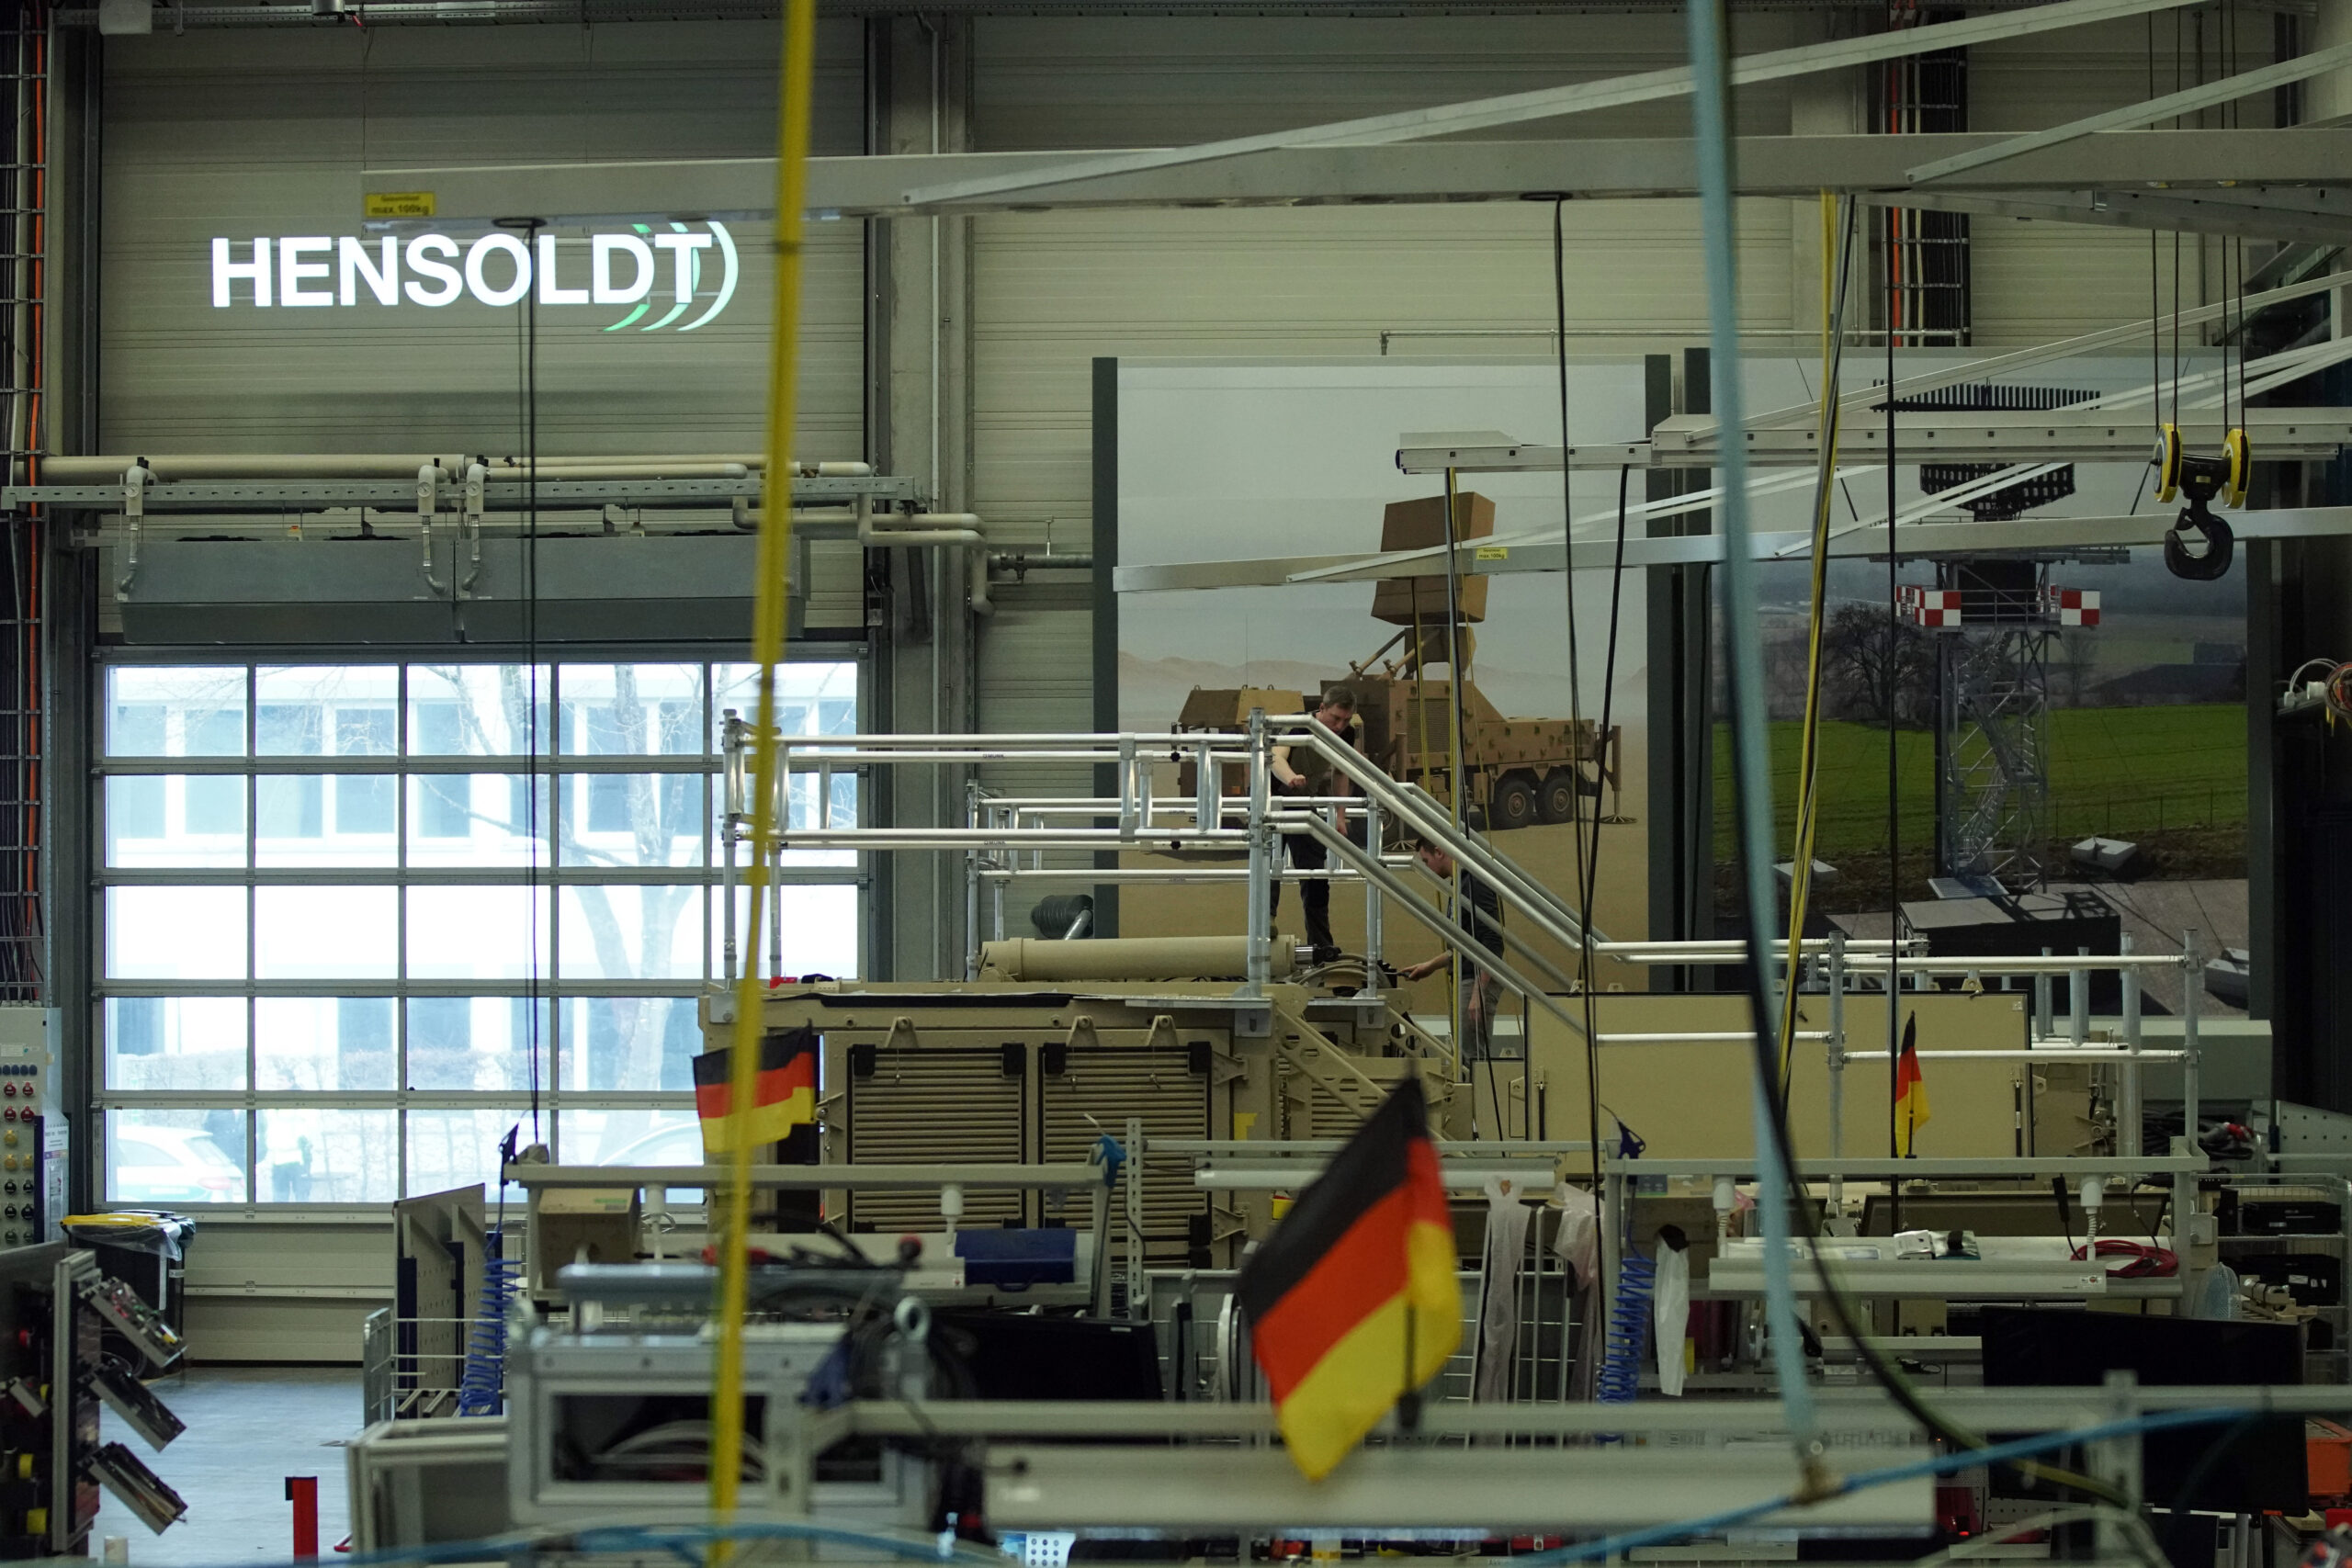 Einblick in eine Produktionshalle von HENSOLDT mit dem Firmenlogo im Hintergrund und der deutschen Fahne im Vordergrund